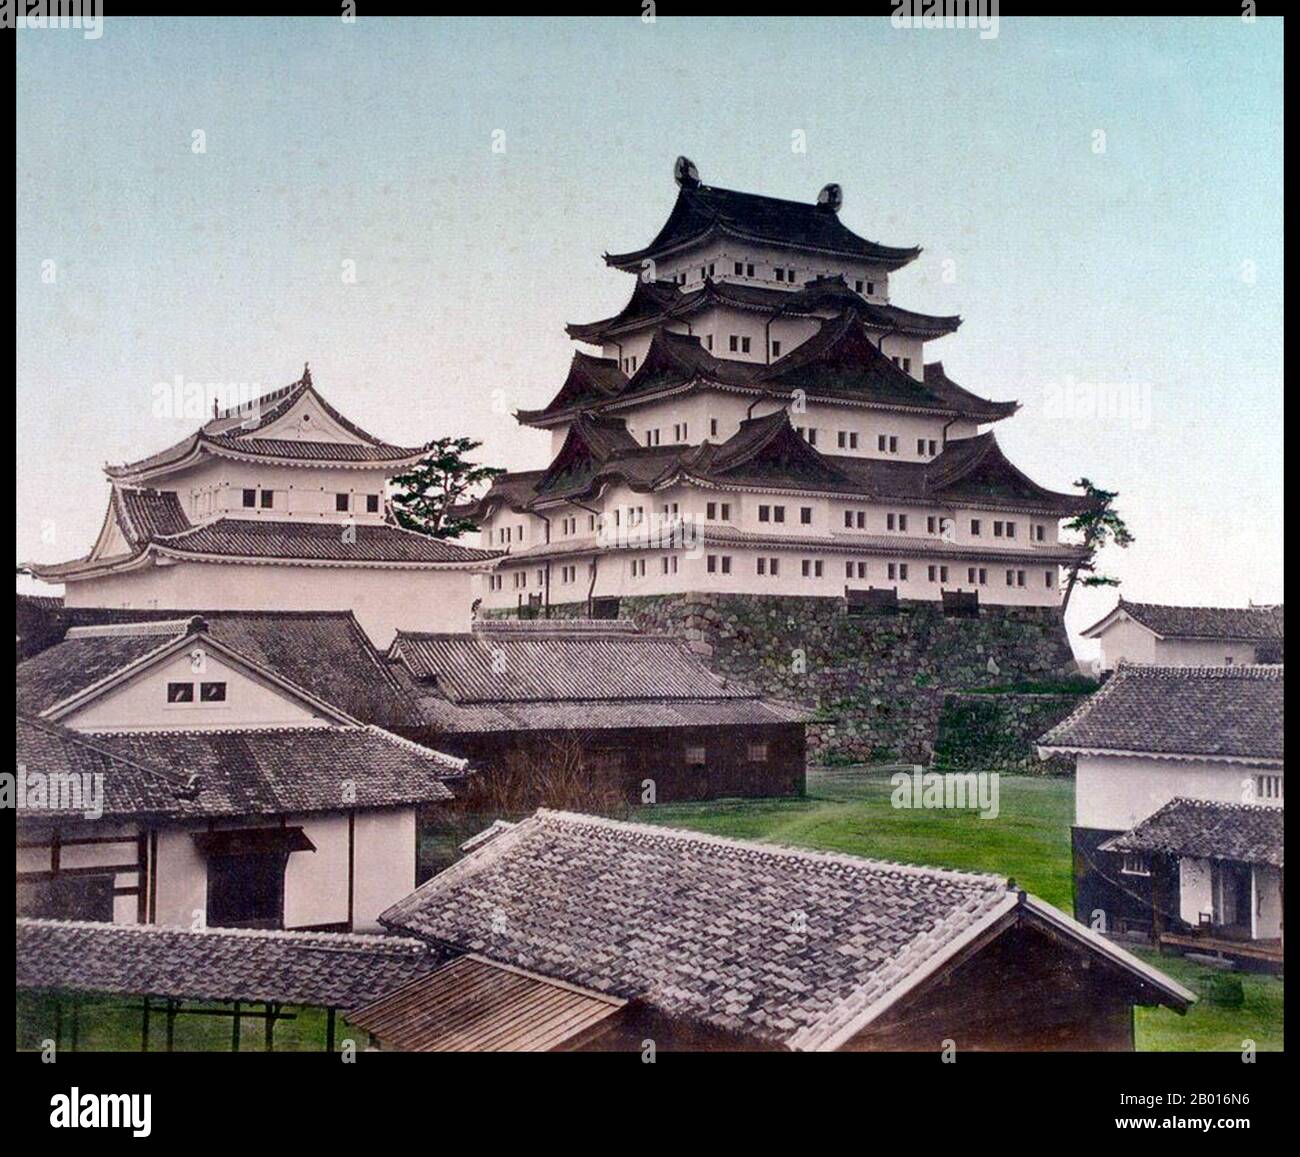 Japon : Château de Nagoya.Photographie de Tamamura Kozaburo (1856-1923), c.1879. Château de Nagoya (Nagoya-jō) est un château situé à Nagoya, dans le centre du Japon.Il a été construit par le domaine d'Owari en 1612.Pendant la période Edo, le château de Nagoya était le centre de l'une des villes les plus importantes du Japon, Nagoya-juku, et il comprenait les arrêts les plus importants le long du Minoji, qui reliait le Tōkaidō avec le Nakasendō (principales autoroutes nationales). Banque D'Images